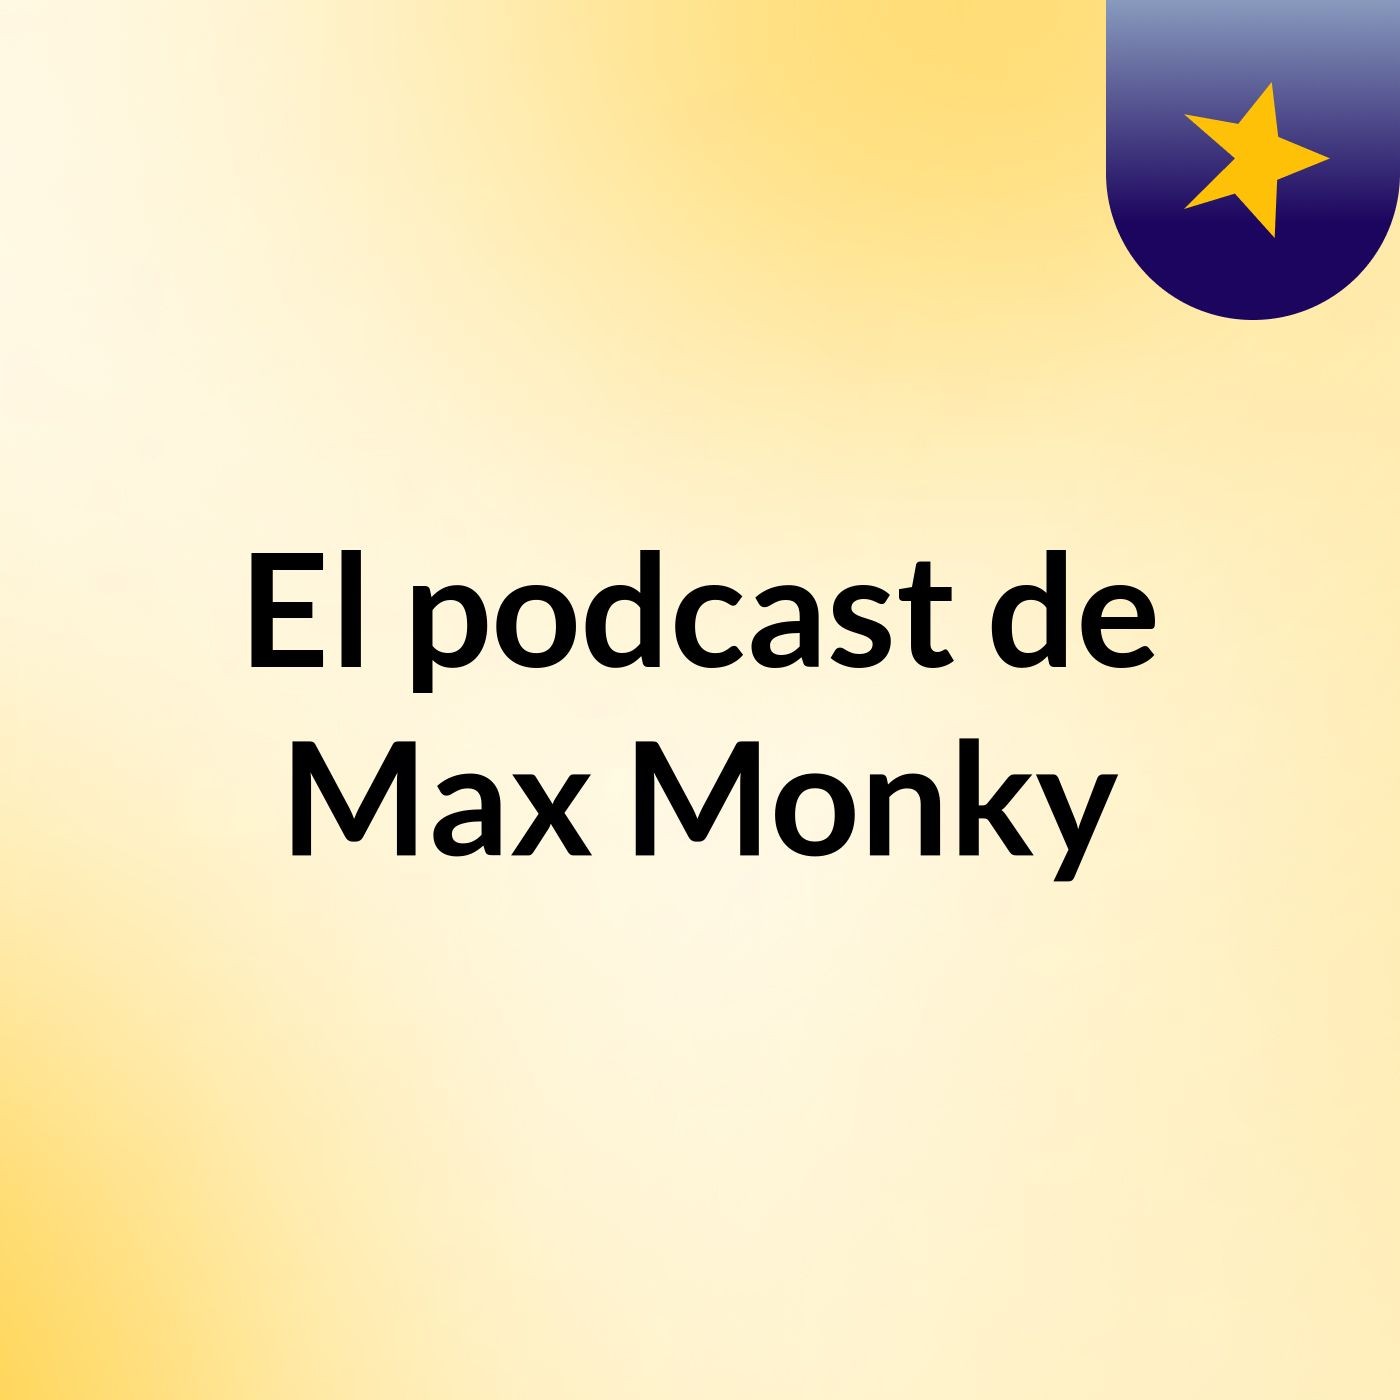 El podcast de Max Monky